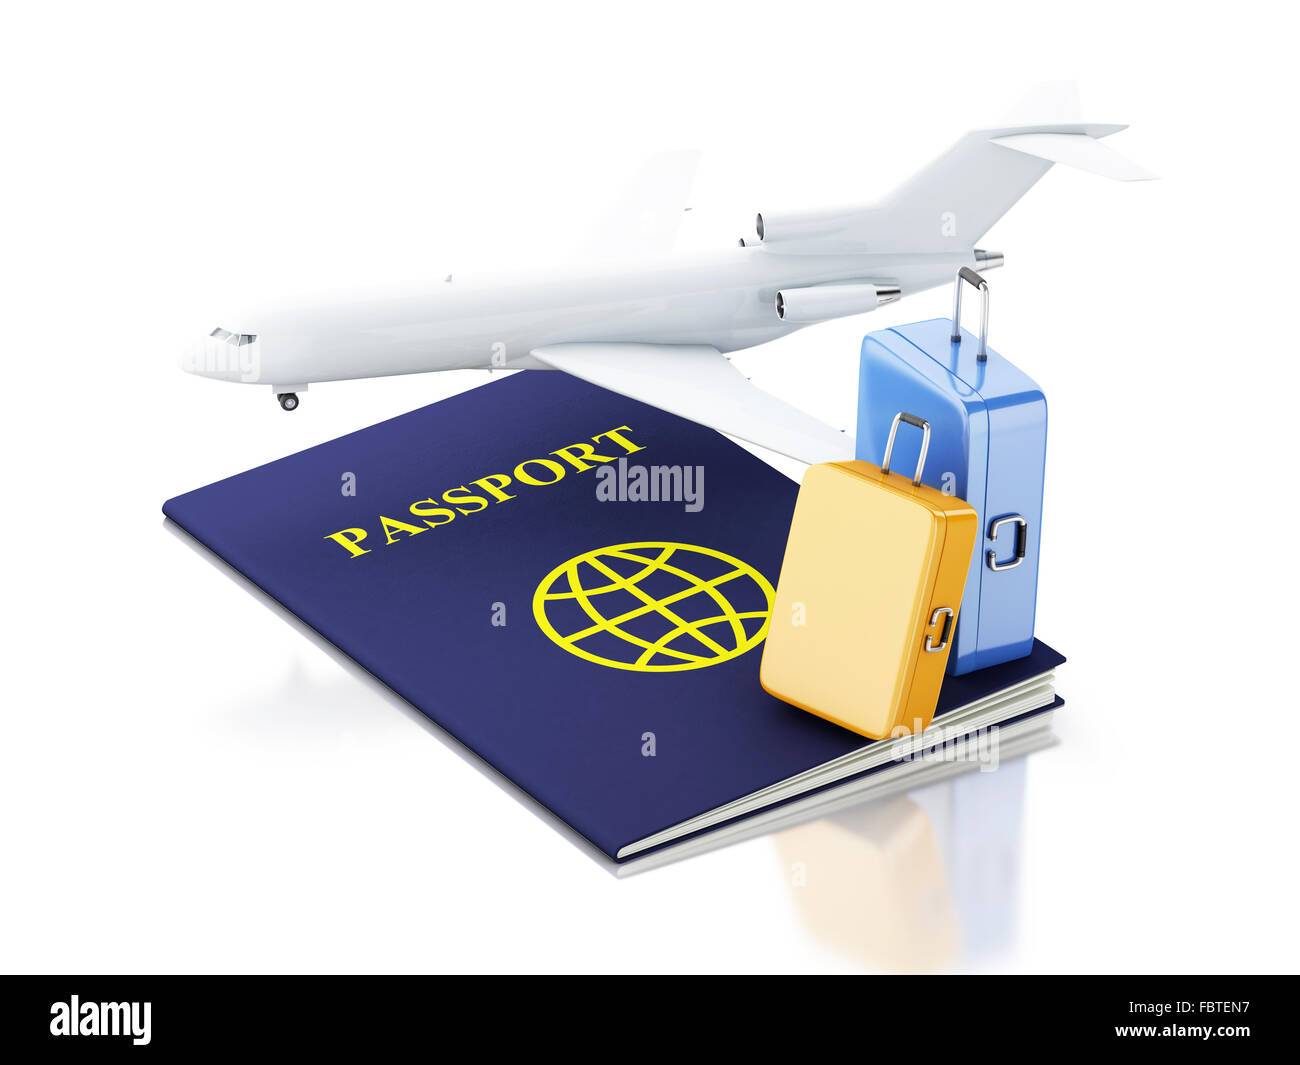 Moteur de rendu 3d illustration. Billet d'avion, passeport et valises. Airline travel concept. Isolé sur fond blanc Banque D'Images